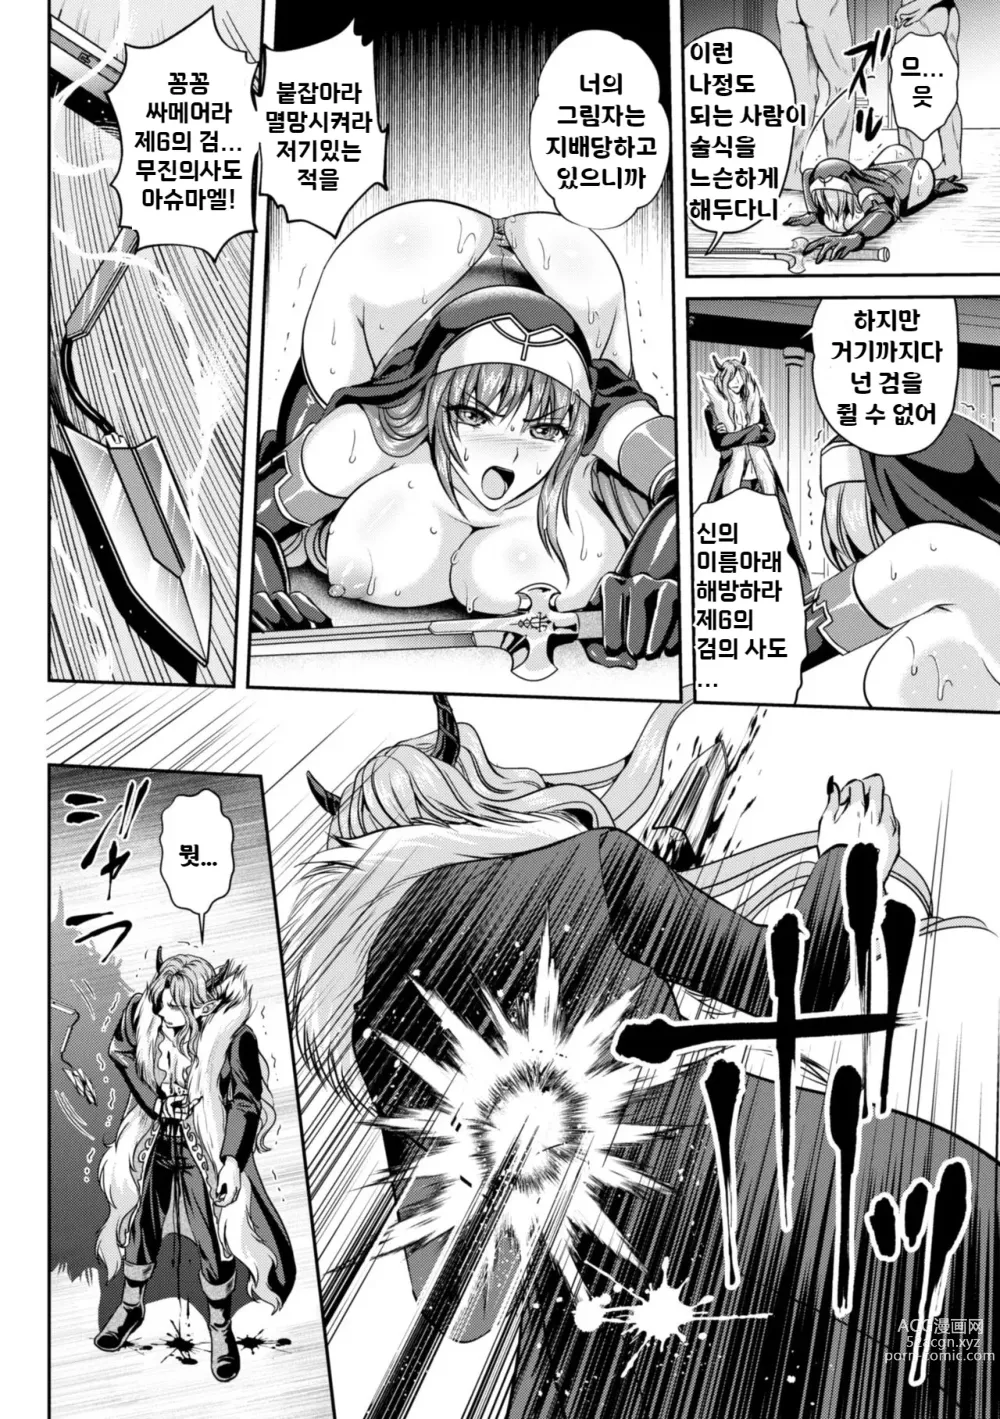 Page 24 of manga 점옥의 리제 음죄의 숙명 제7화